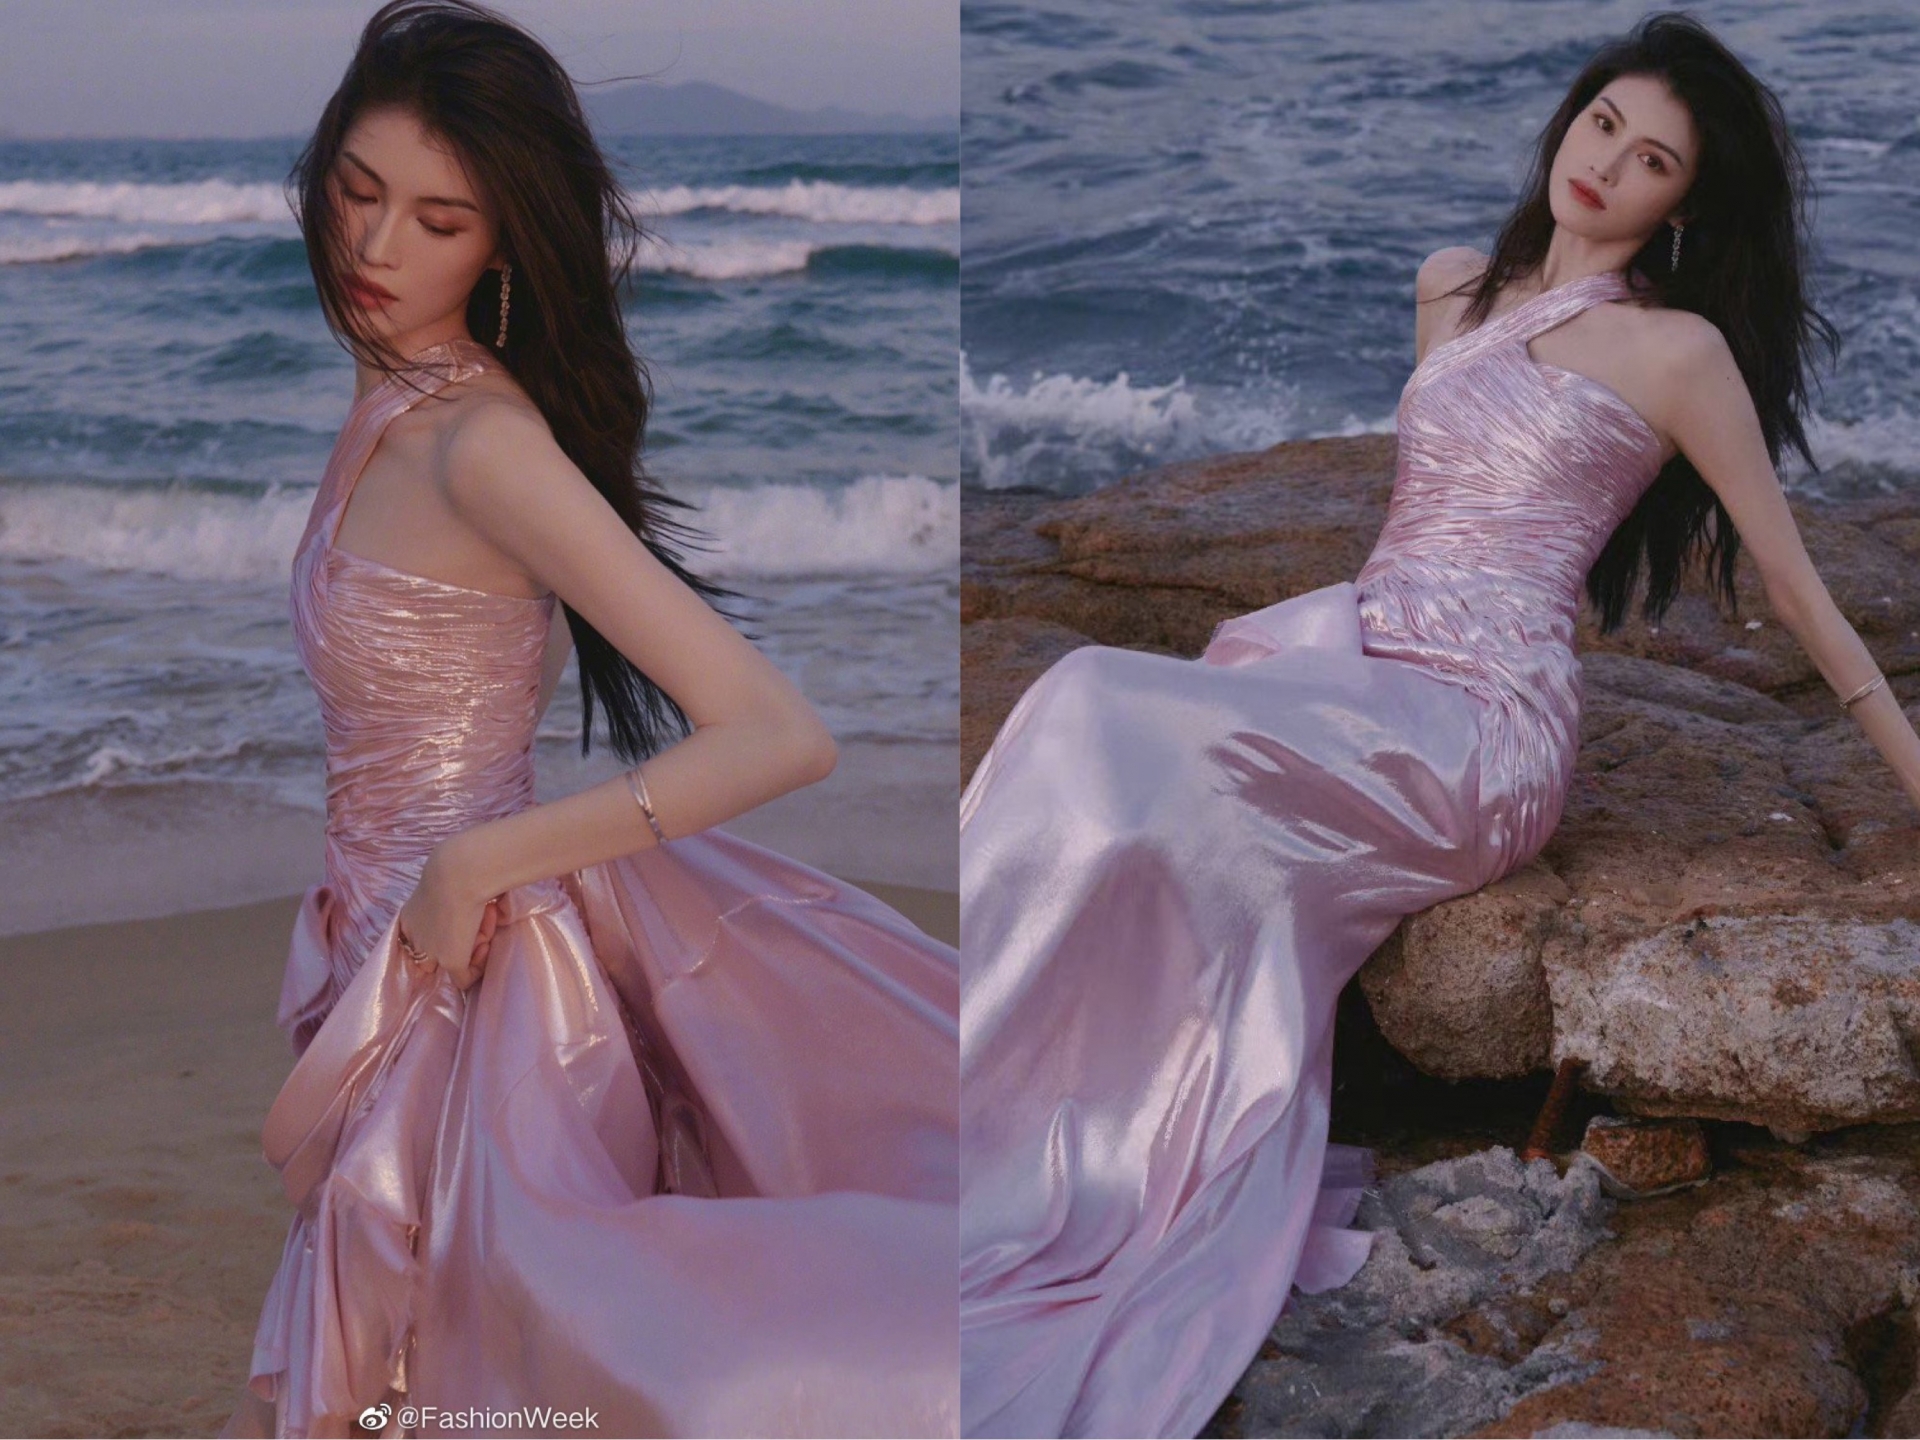 'Thiên thần' Victoria's Secret Hà Tuệ hoá thành nàng tiên cá cực xinh đẹp bên bờ biển trong chiếc váy quyến rũ màu hồng. Chẳng cần trang điểm hay làm tóc cầu kì nhưng 'chân dài' vẫn khiến dân tình 'đổ rầm rầm' với gương mặt cực thanh tú.